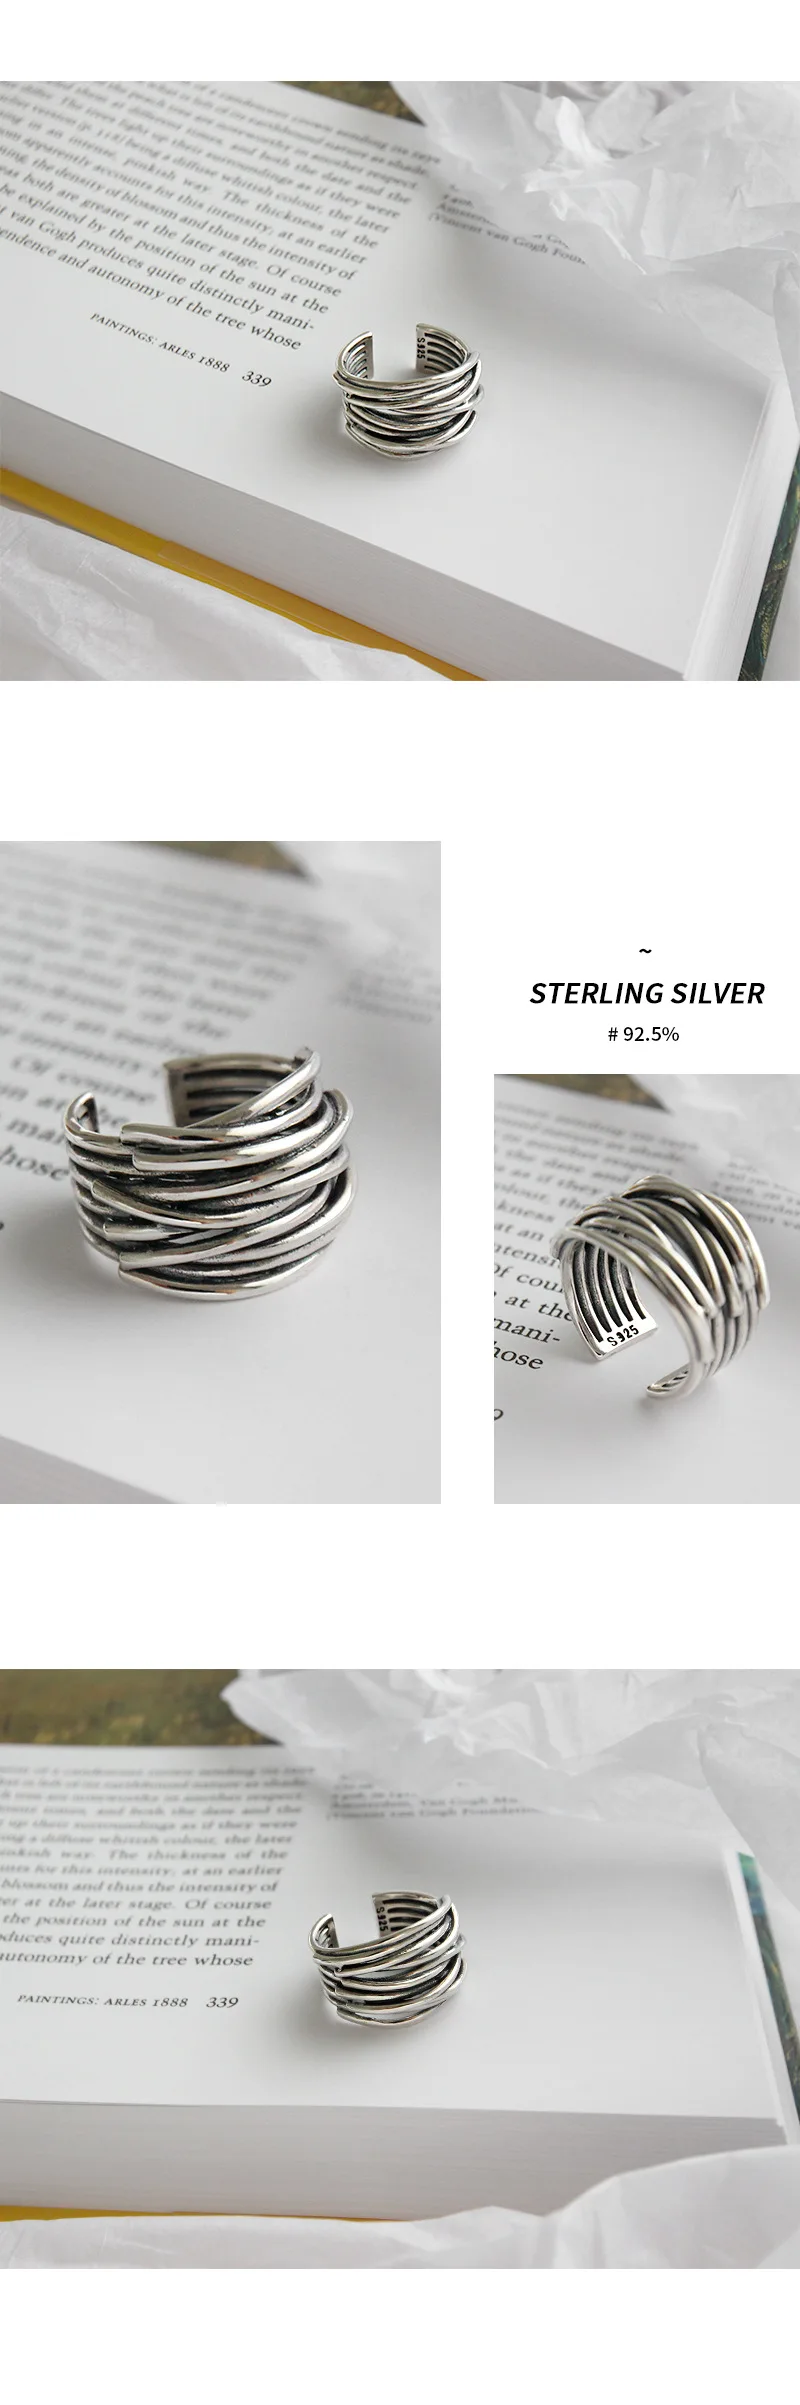 JShine Ретро старинное серебро 925 пробы широкий шпагат кольца для женщин старинное кольцо на палец корейская мода прекрасное серебро 925 ювелирные изделия